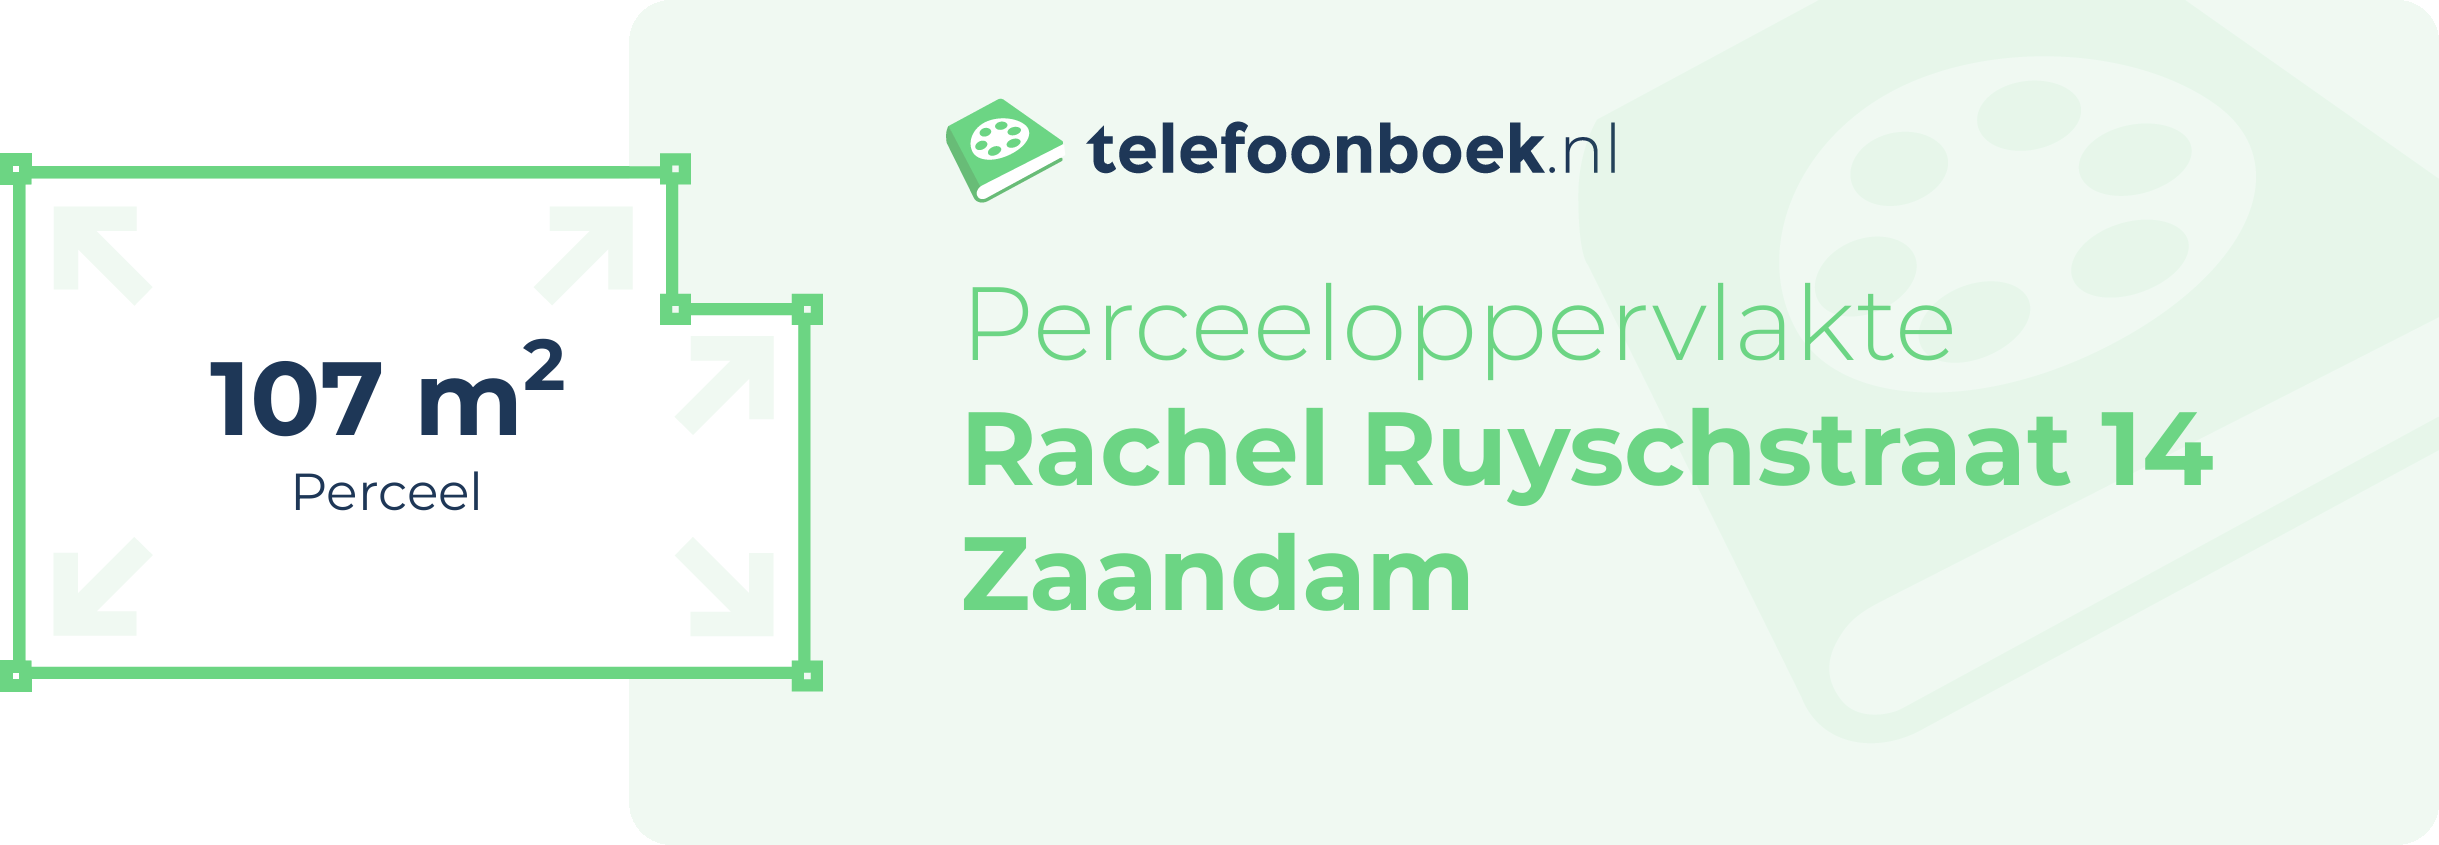 Perceeloppervlakte Rachel Ruyschstraat 14 Zaandam